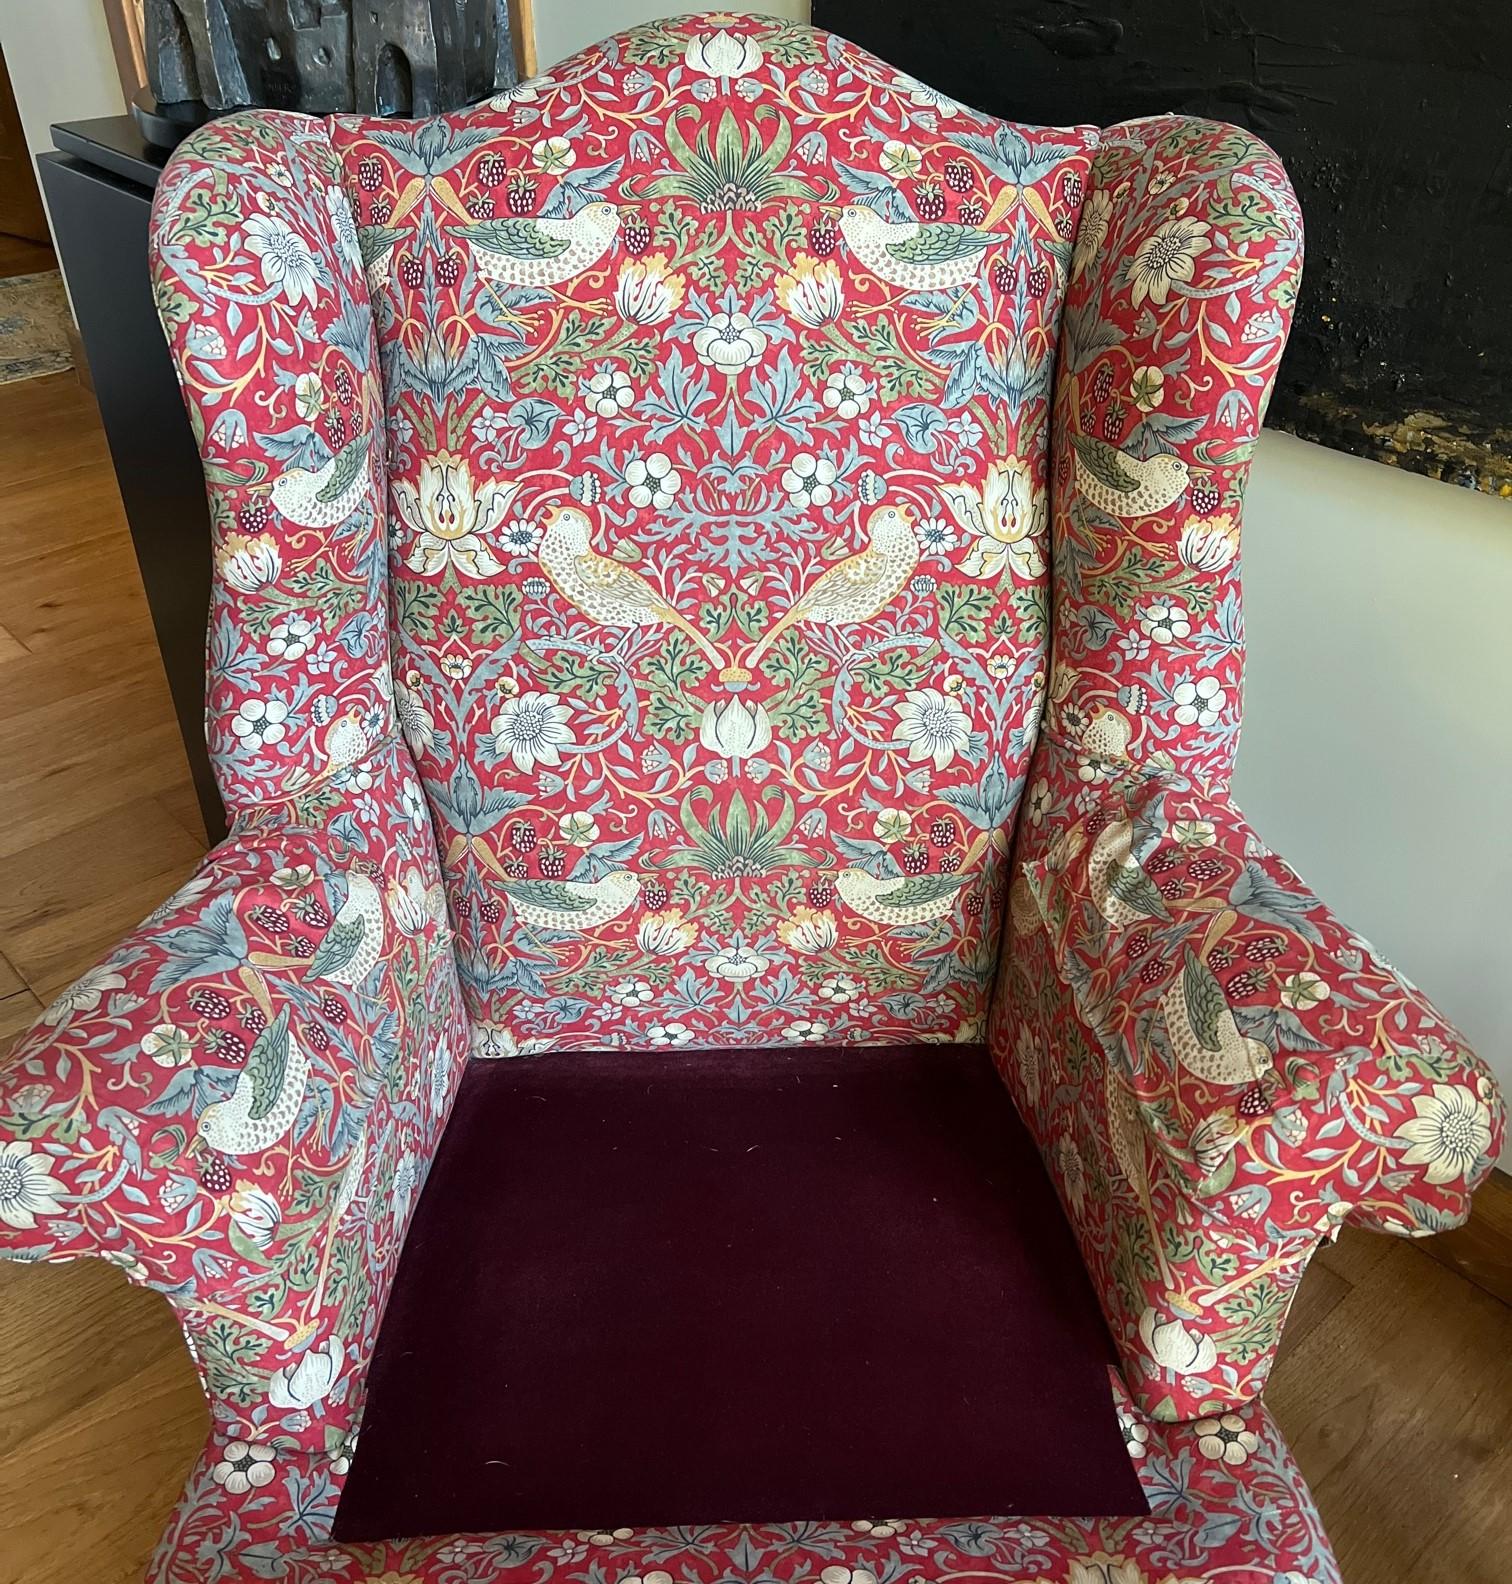 Ein geräumiger Vintage-Sessel mit Ottomane, neu gepolstert mit dem ikonischen 